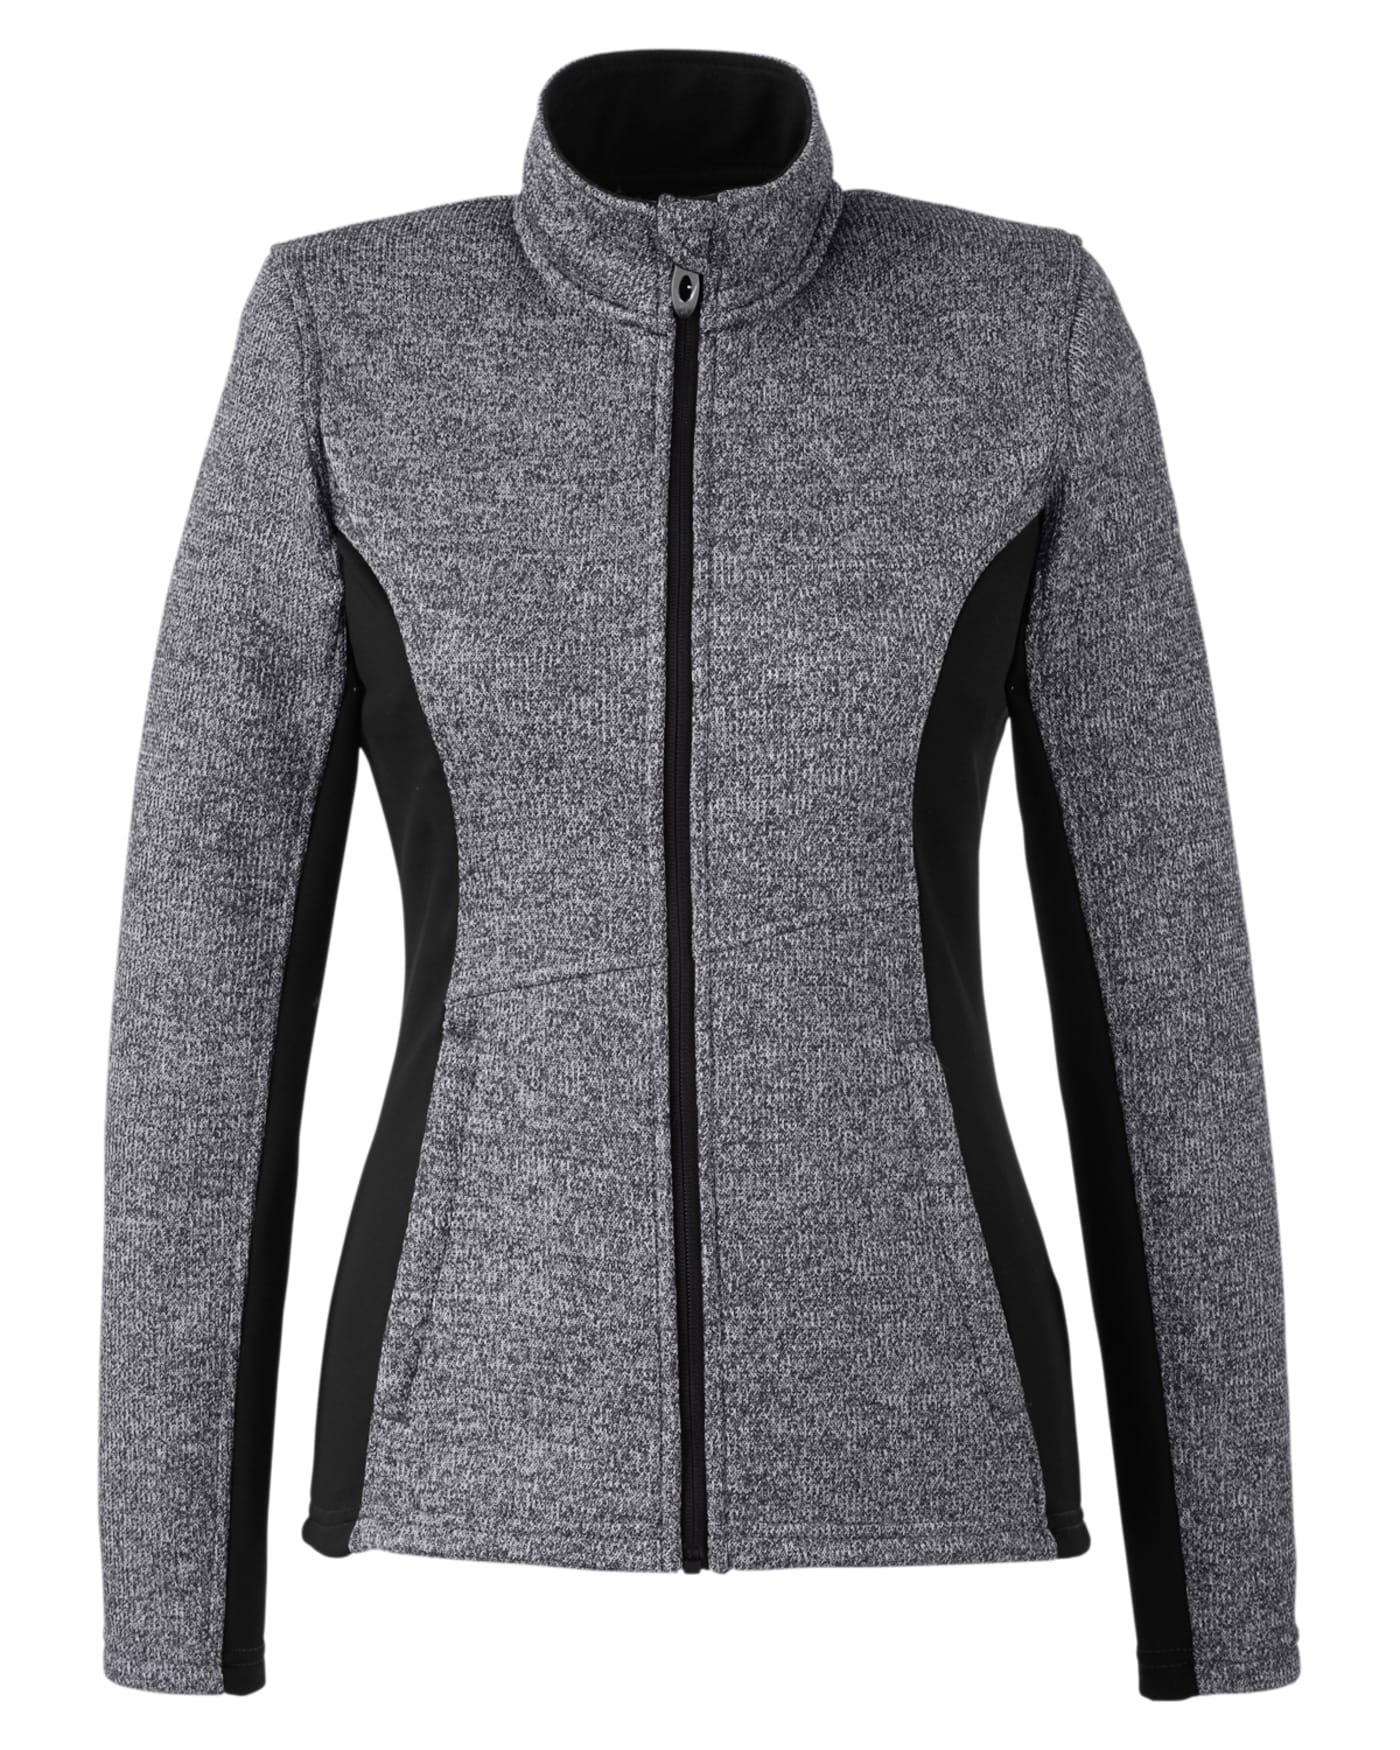 Custom Spyder Ladies' Constant Full Zip Sweater Fleece Jacket - Coastal ...